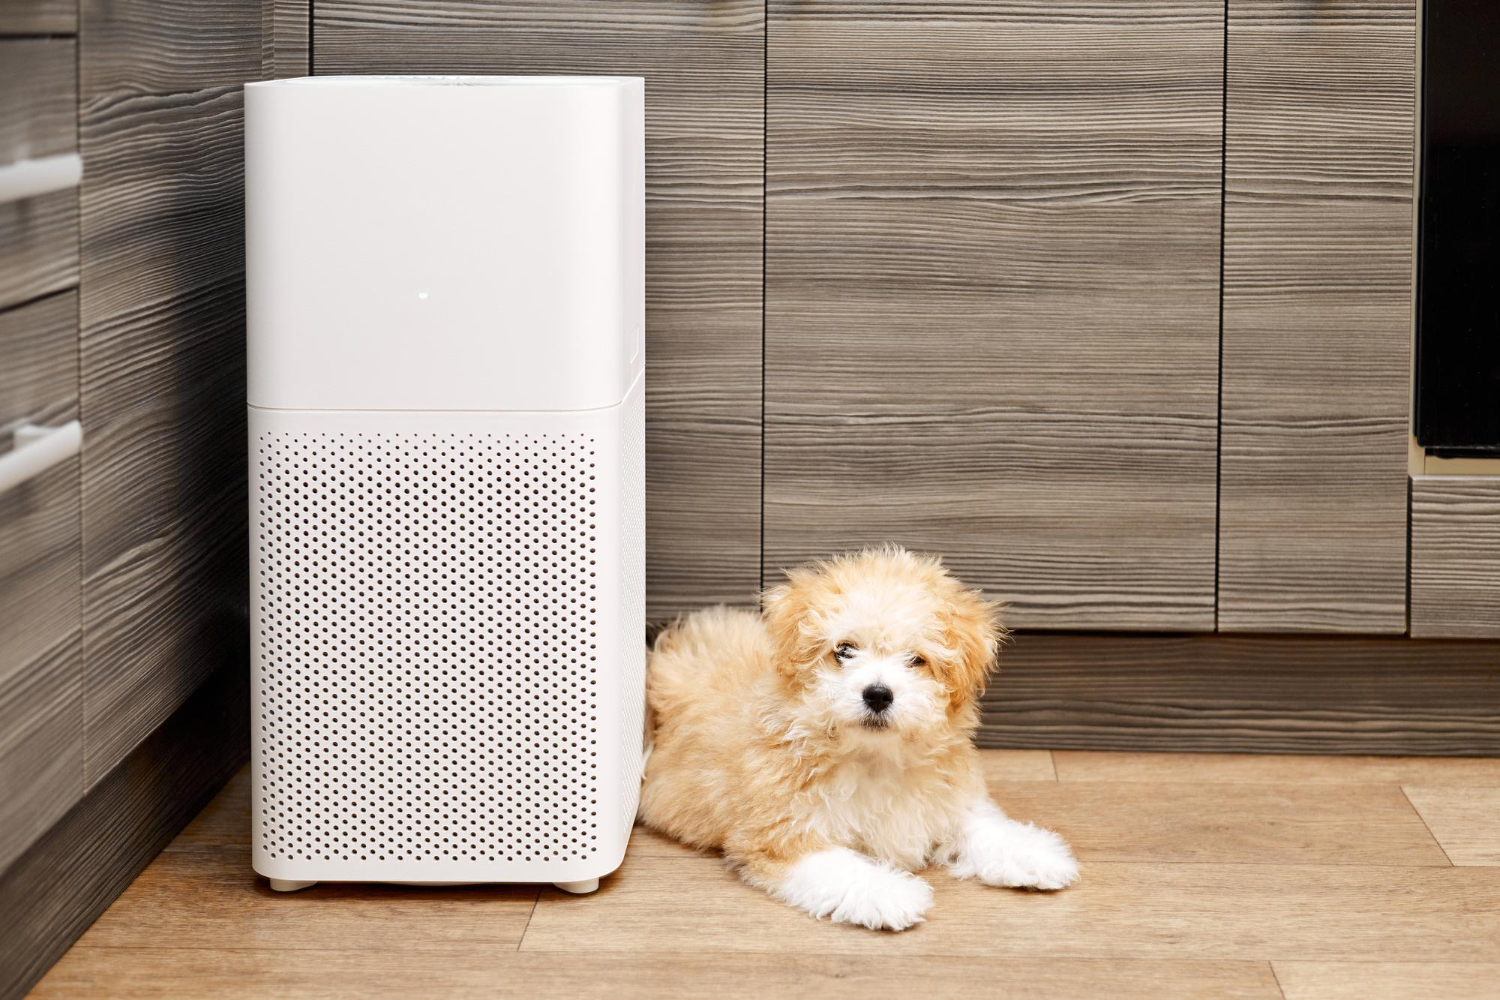 O ar condicionado faz mal ao cachorro?